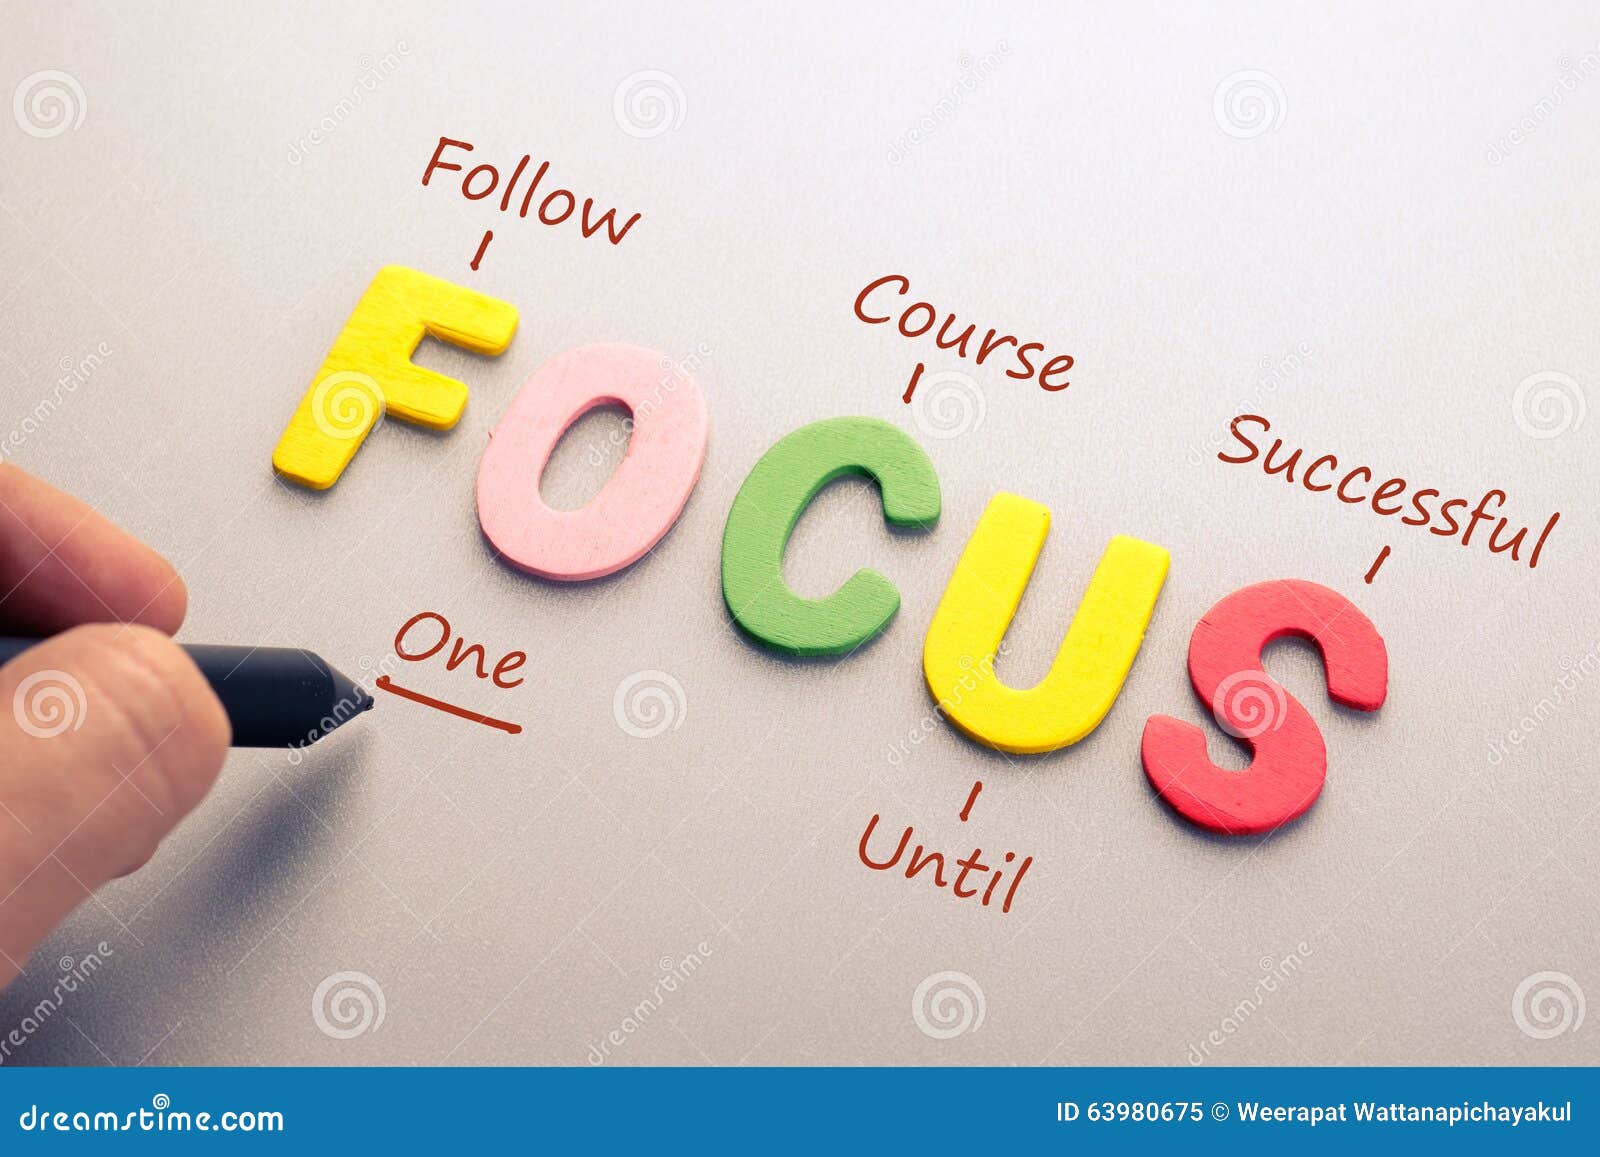 focus acronym